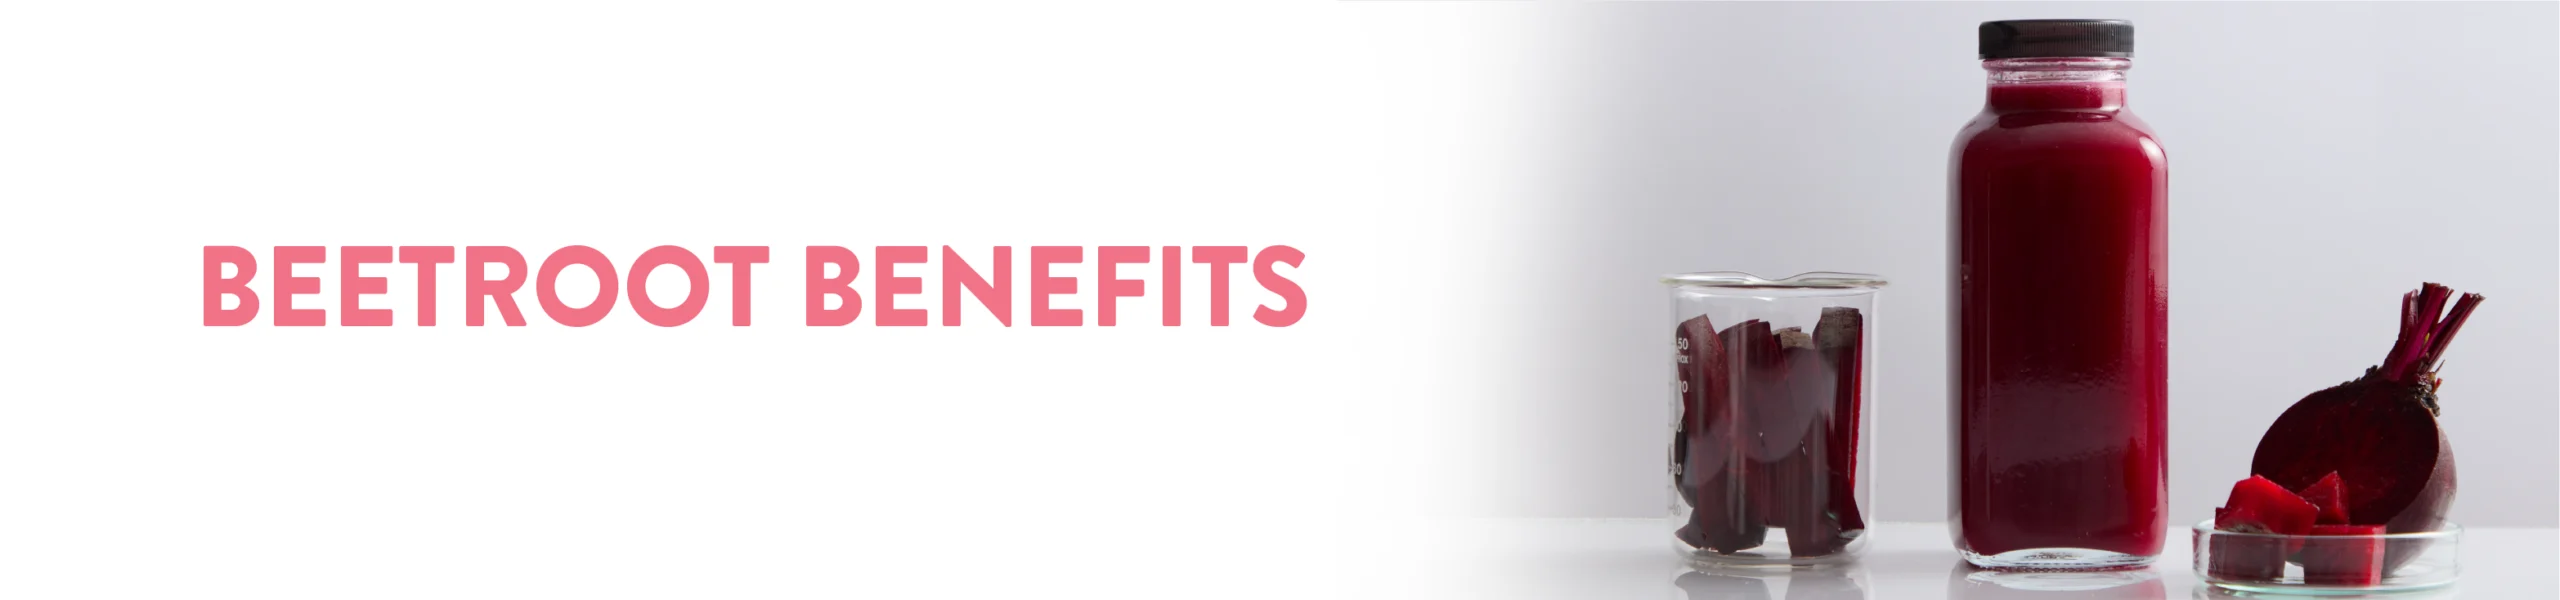 Beetroot benefits